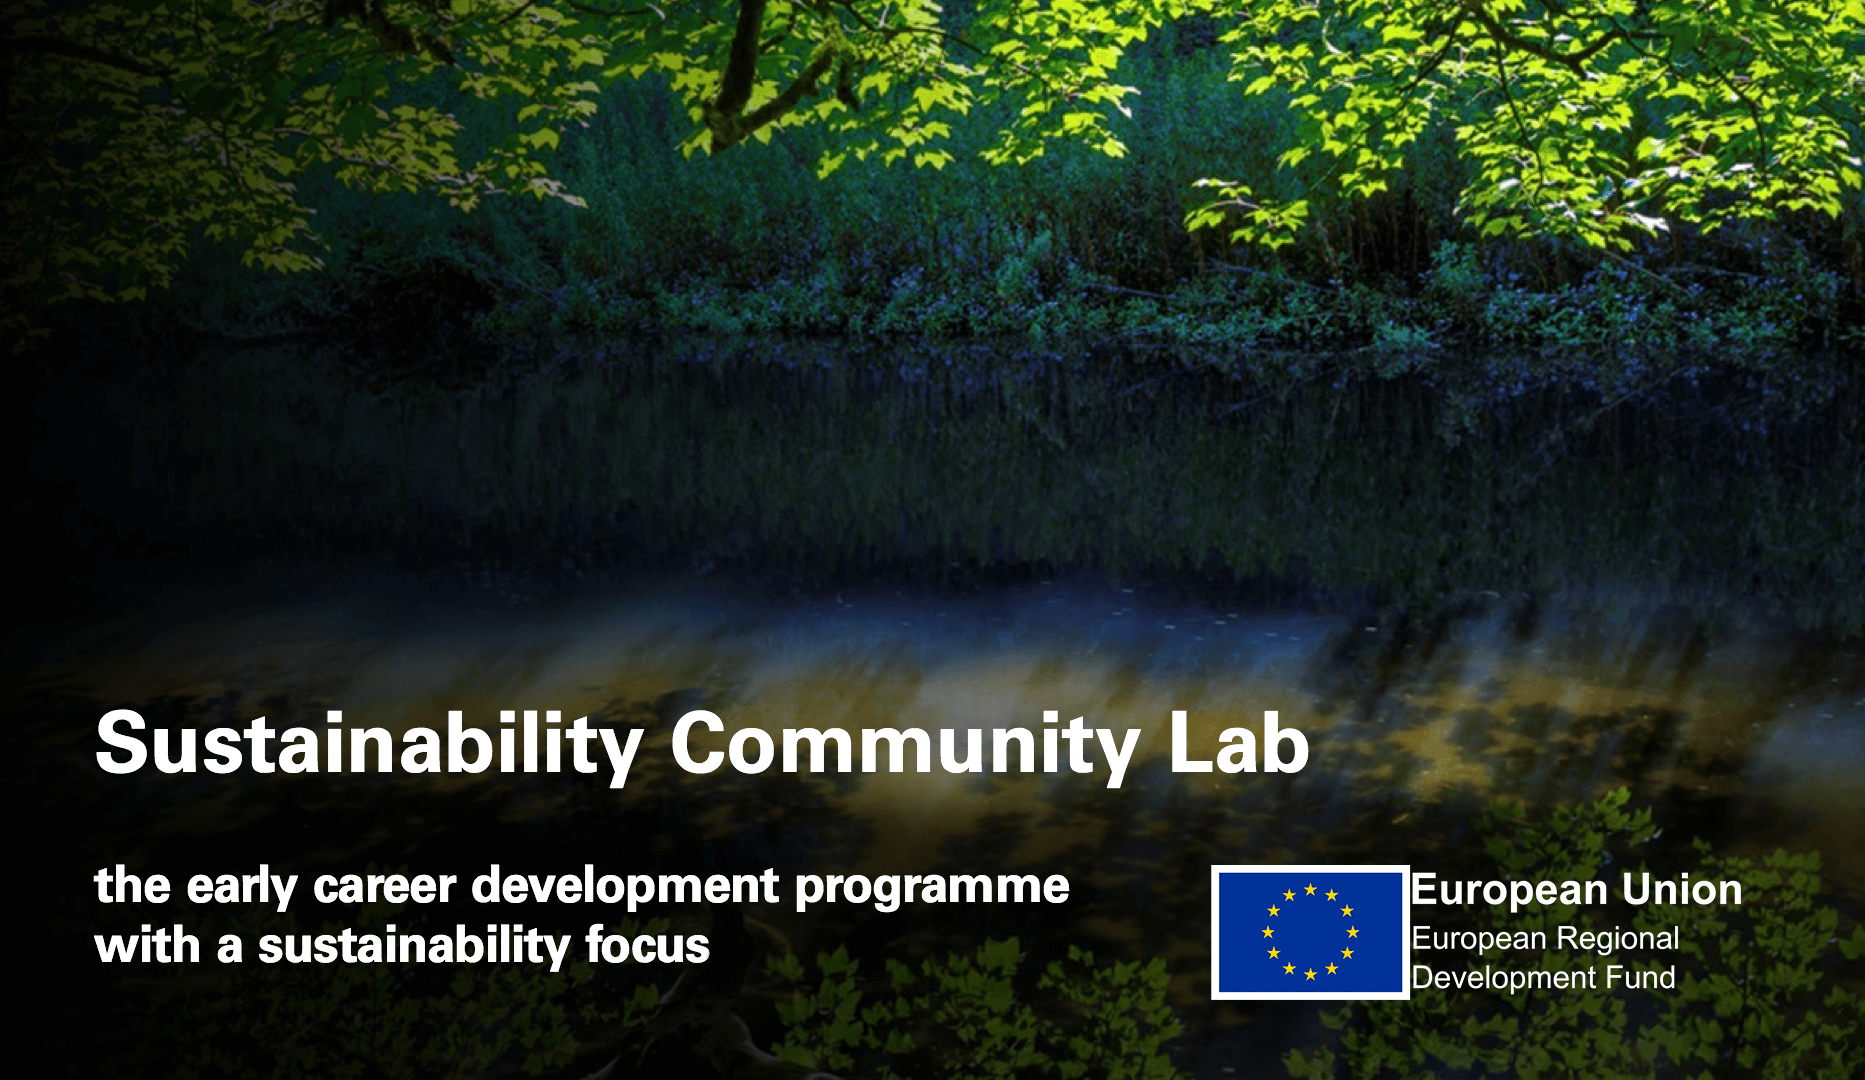 ERDF Sustainability Community Lab